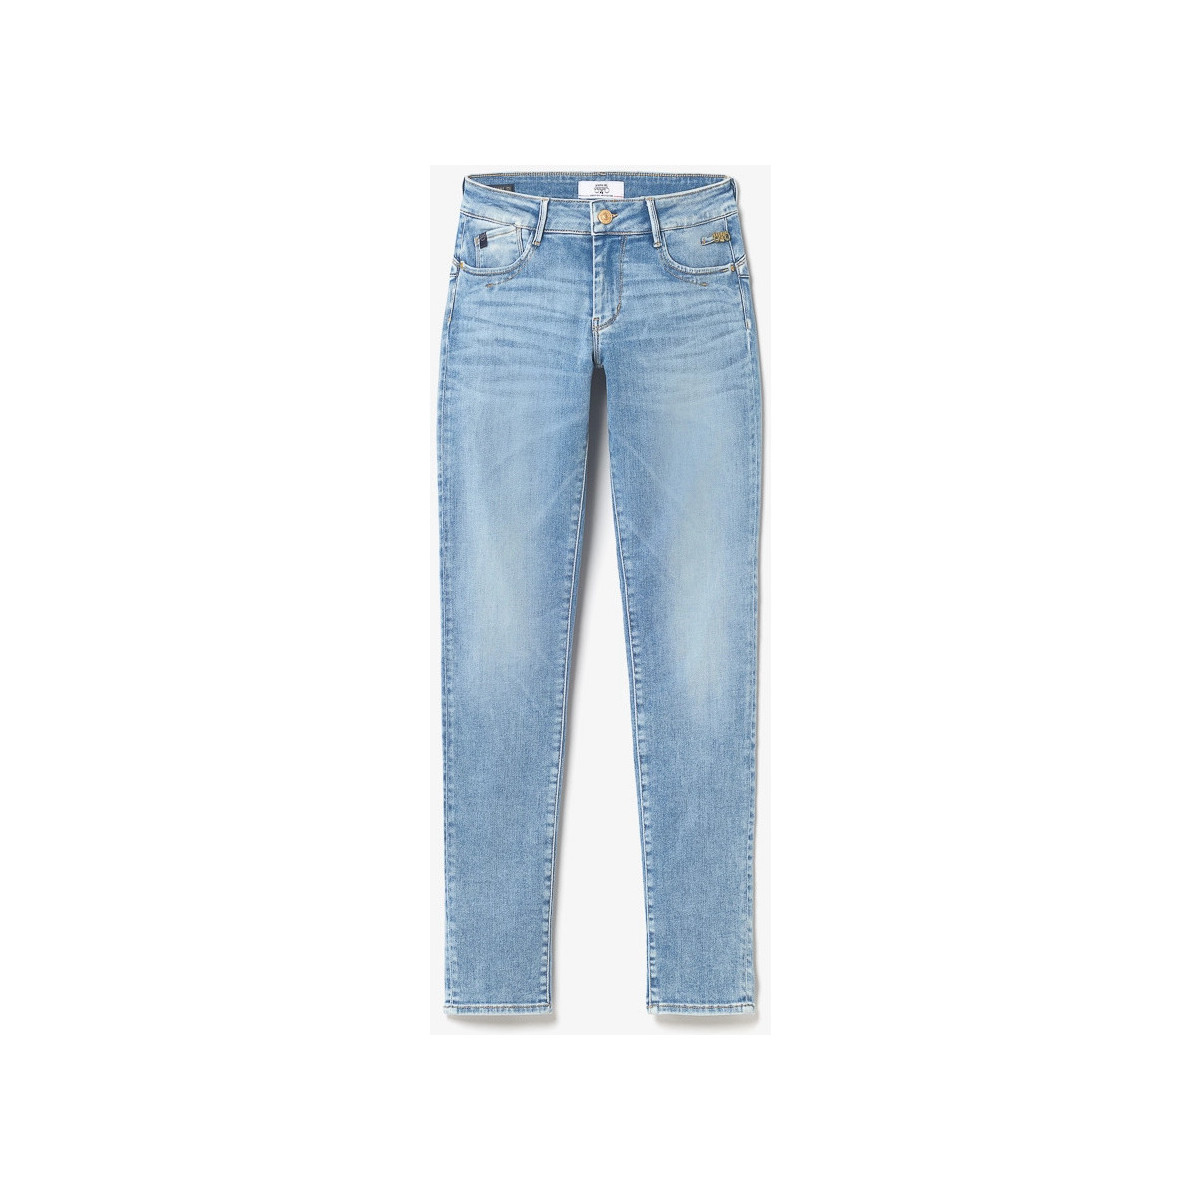 Le Temps des Cerises Bleu Flip pulp slim jeans bleu rgc